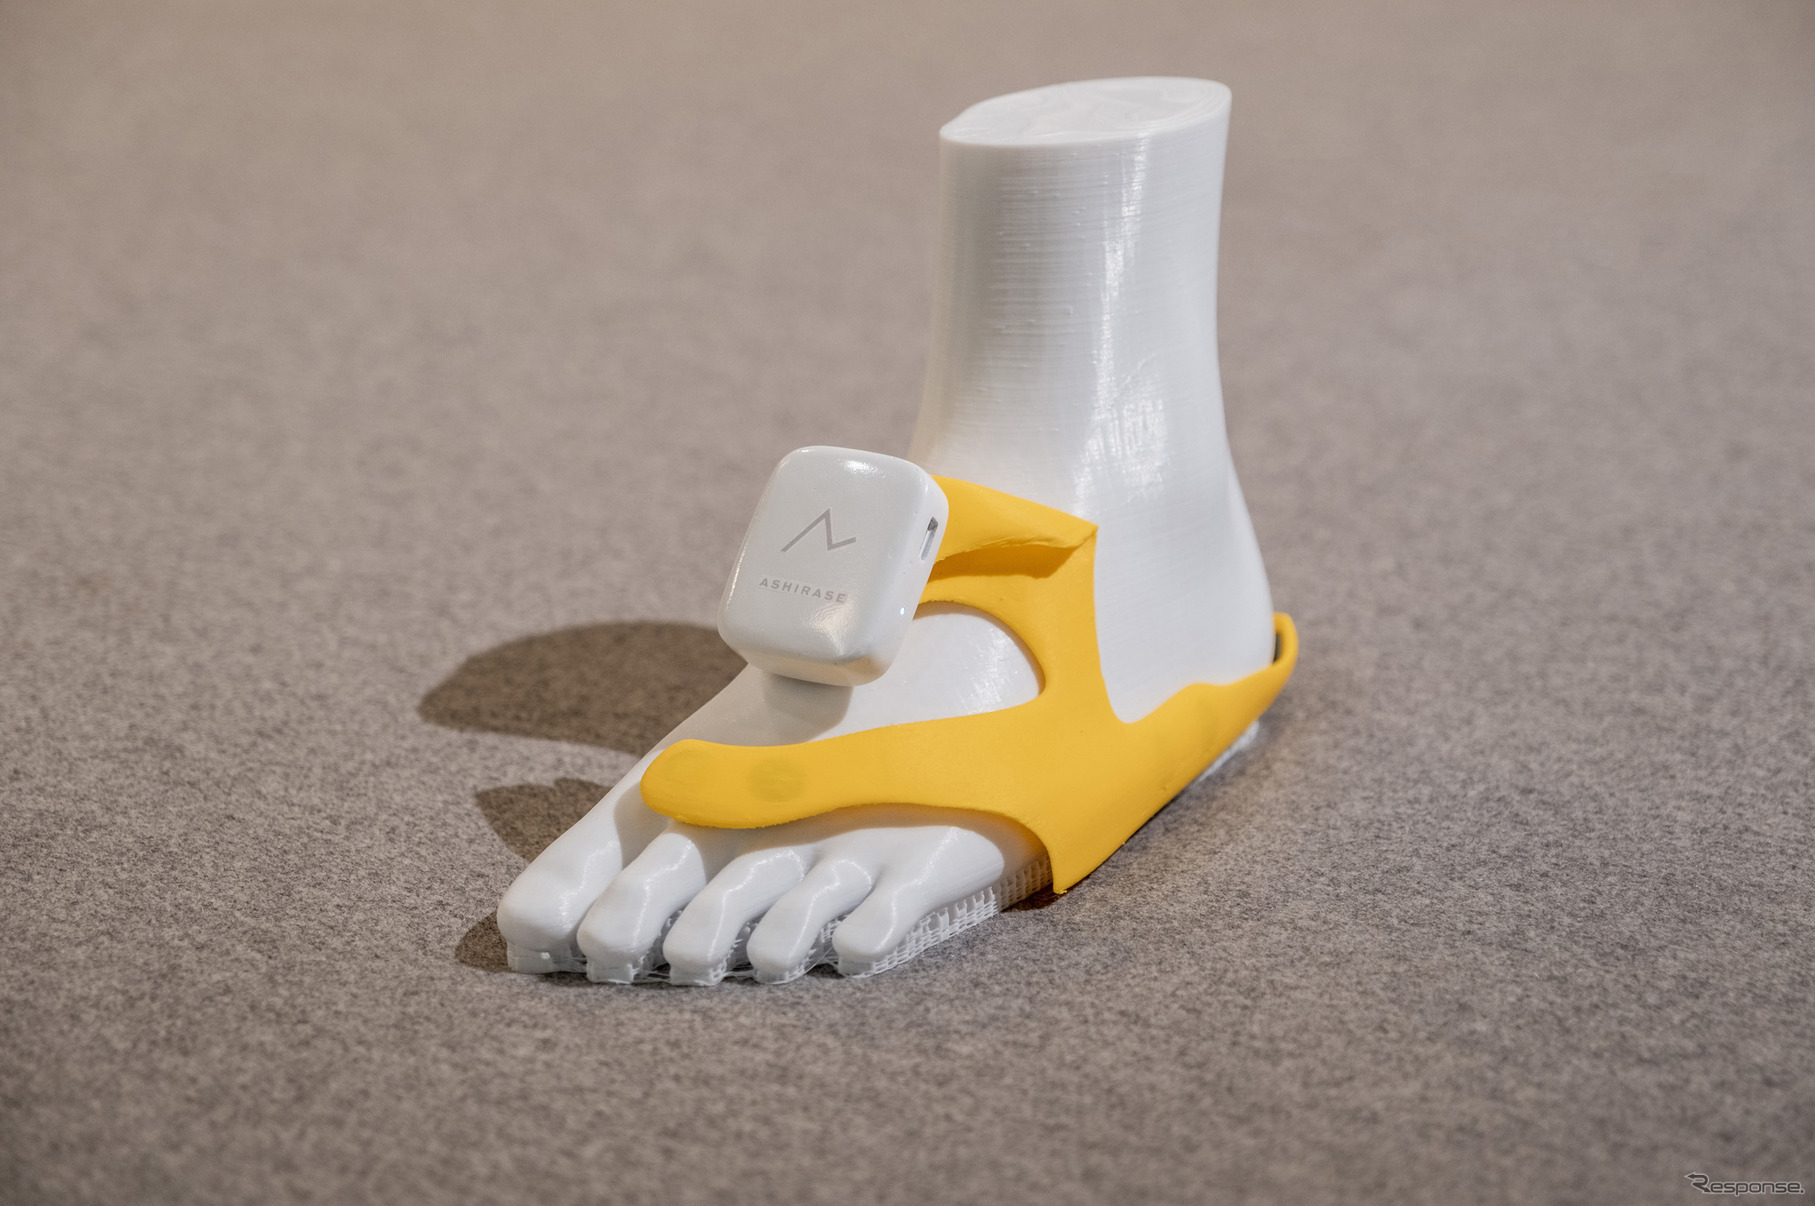 「あしらせ」のデバイス。黄色の部分は靴の中に取り付ける立体型のモーションセンサー付き振動デバイスになっている。